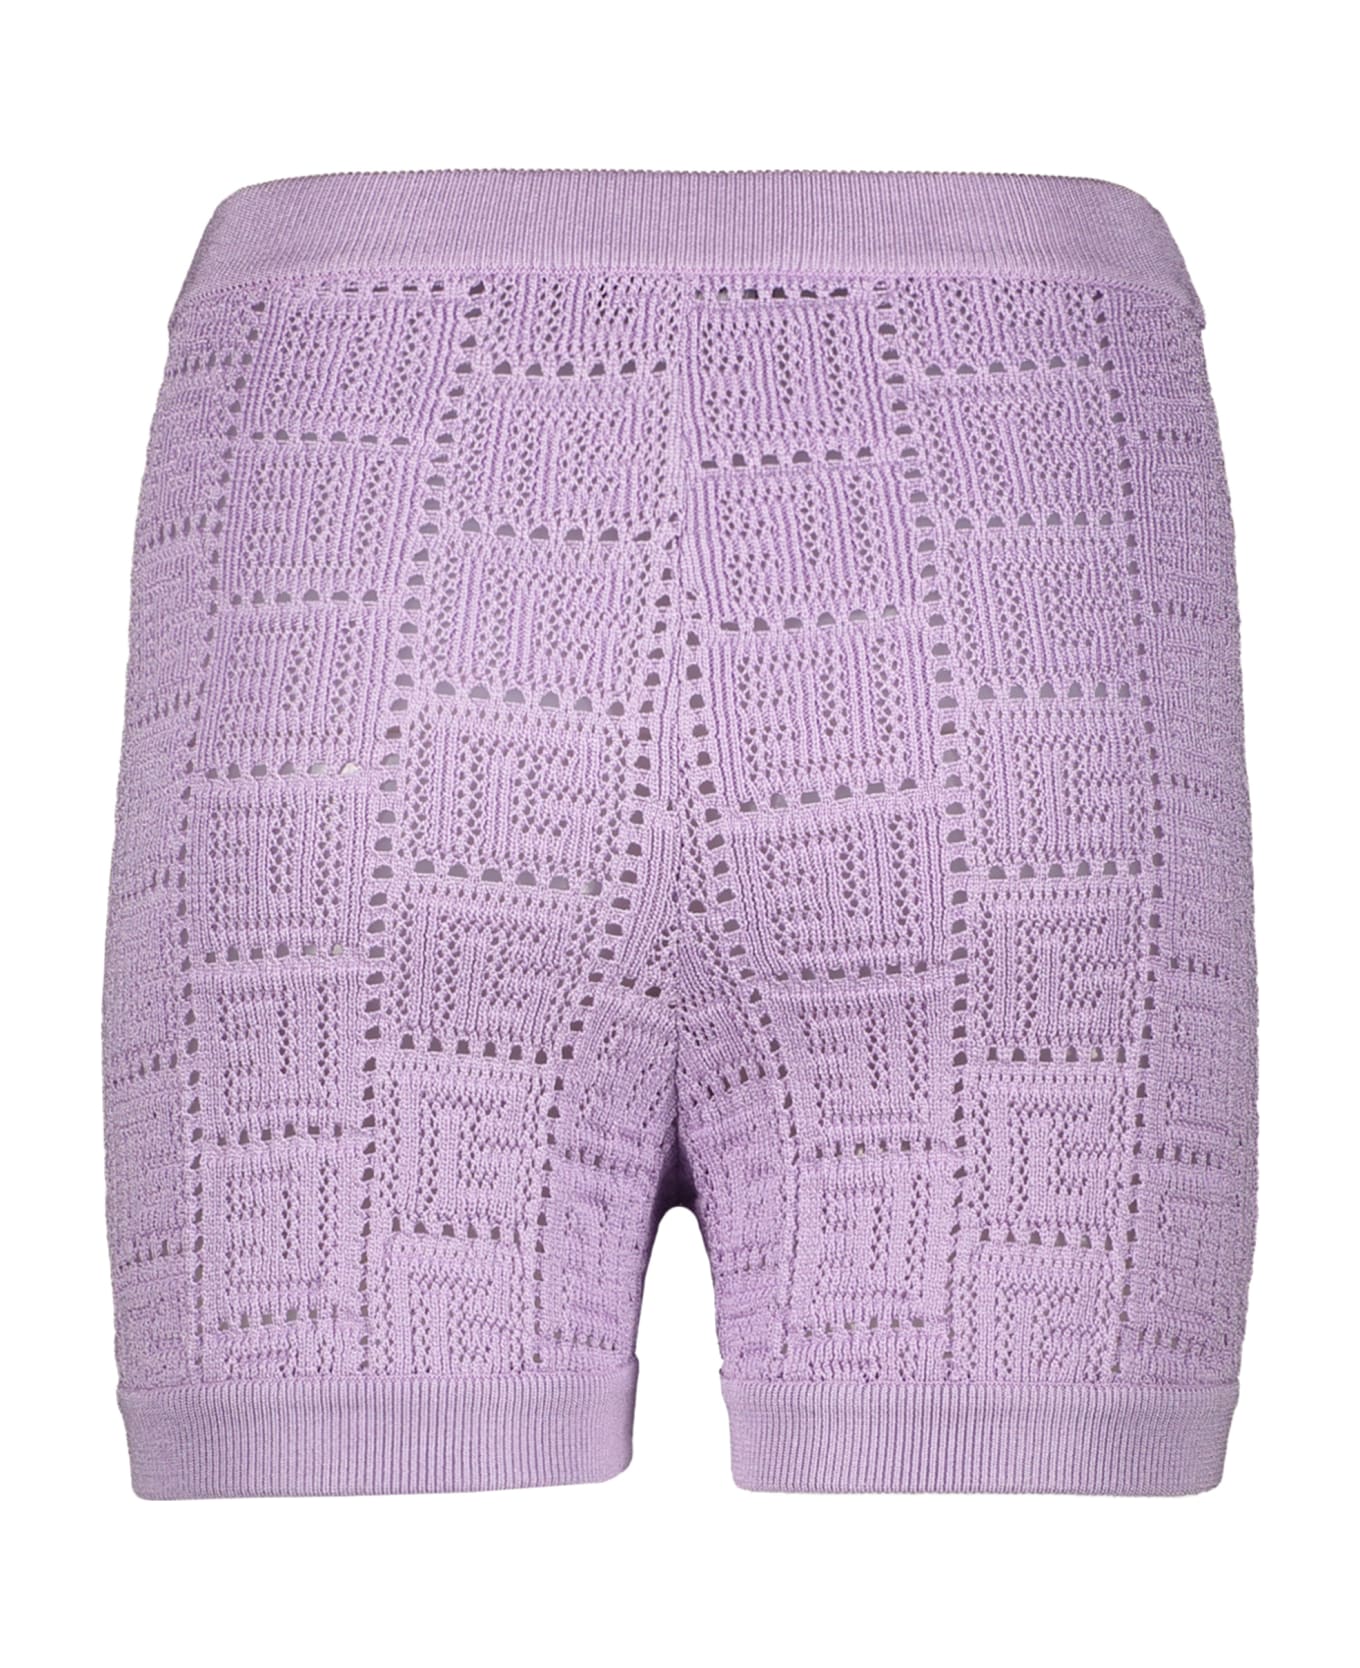 Balmain Knitted Shorts - Lilac